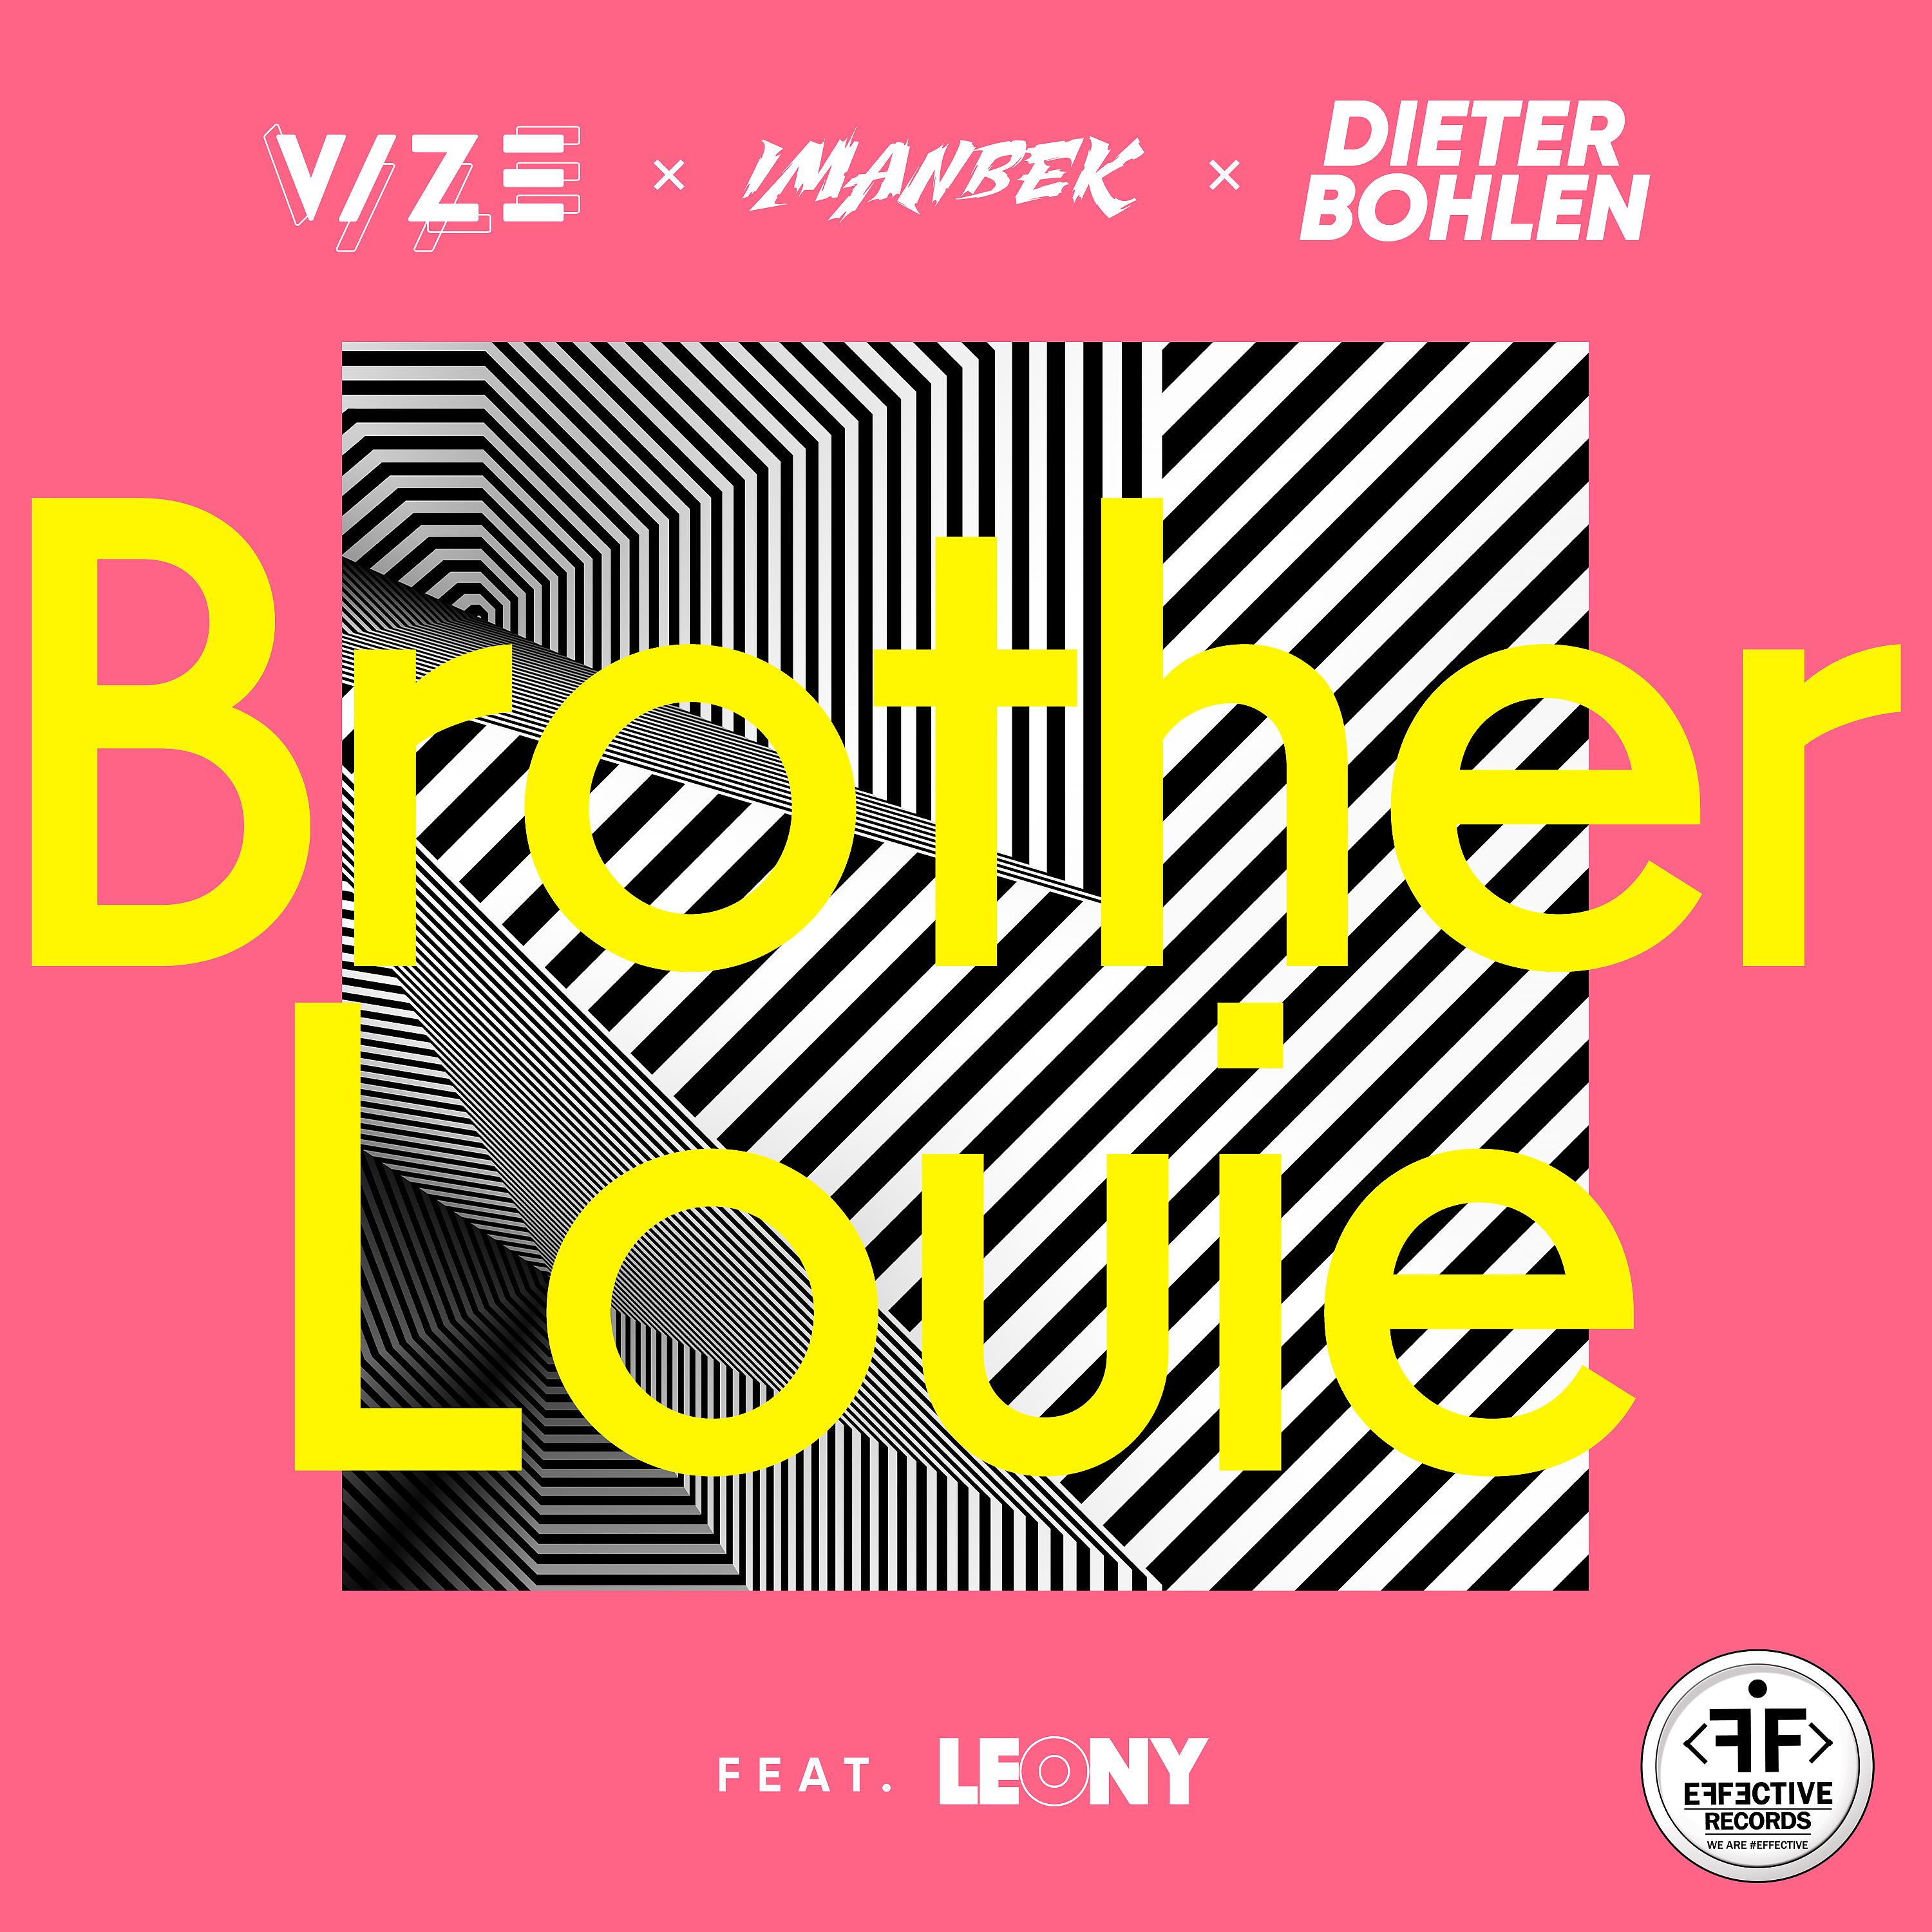 Постер альбома Brother Louie